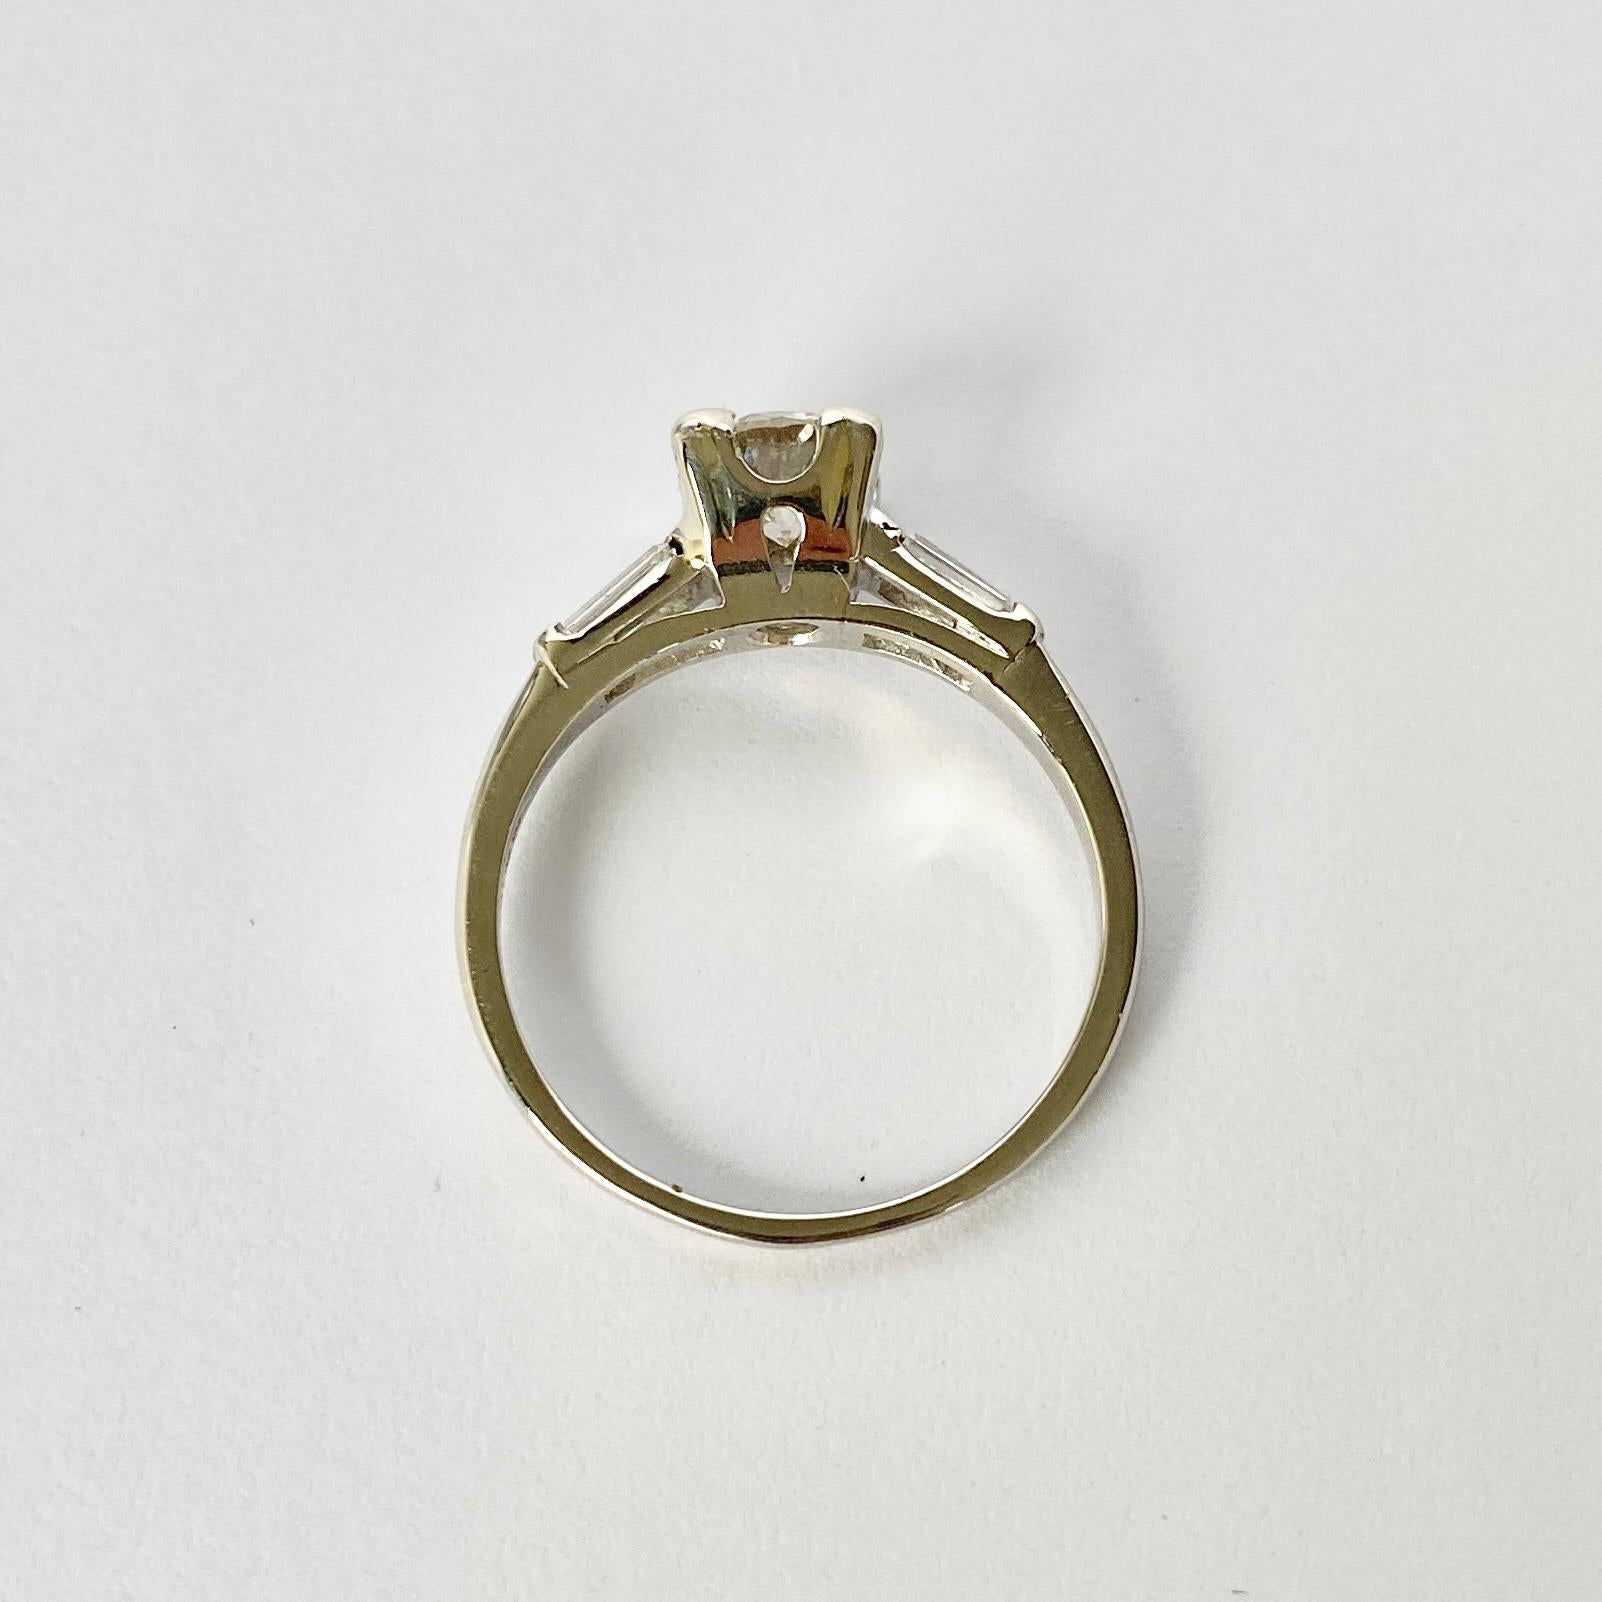 Der Hauptdiamant in diesem Ring misst 75 ppm und hat die Farbe H/I. Der Stein glänzt wunderschön und an den Schultern sitzen Baguette-Diamanten. Der Ring ist aus Platin modelliert. 

Ring Größe: M 1/2 oder 6 1/2 
Höhe ohne Finger: 6,5 mm

Gewicht: 4g